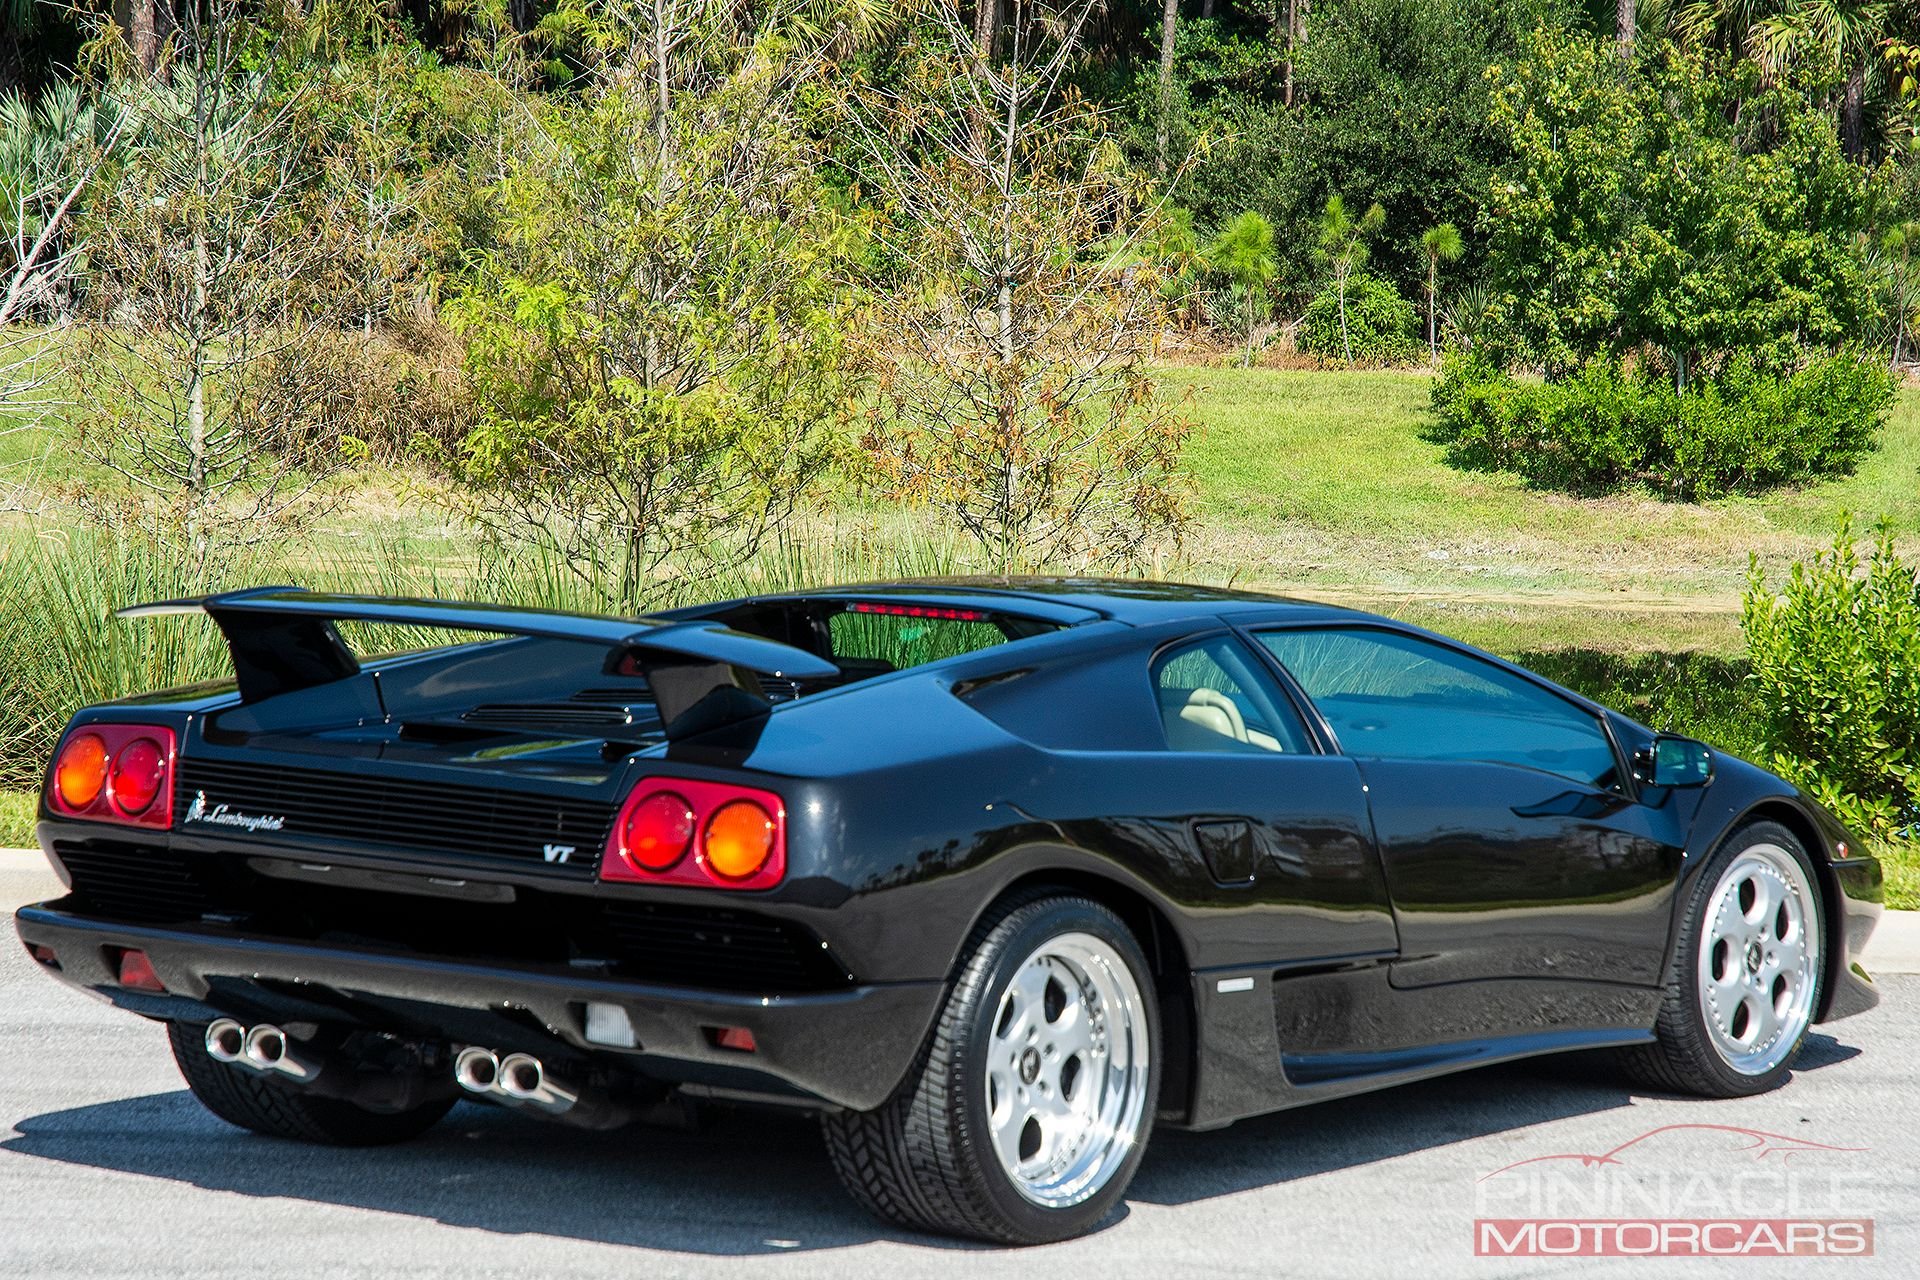 30134104 | 1999 Lamborghini Diablo VT | Pinnacle Motorcars